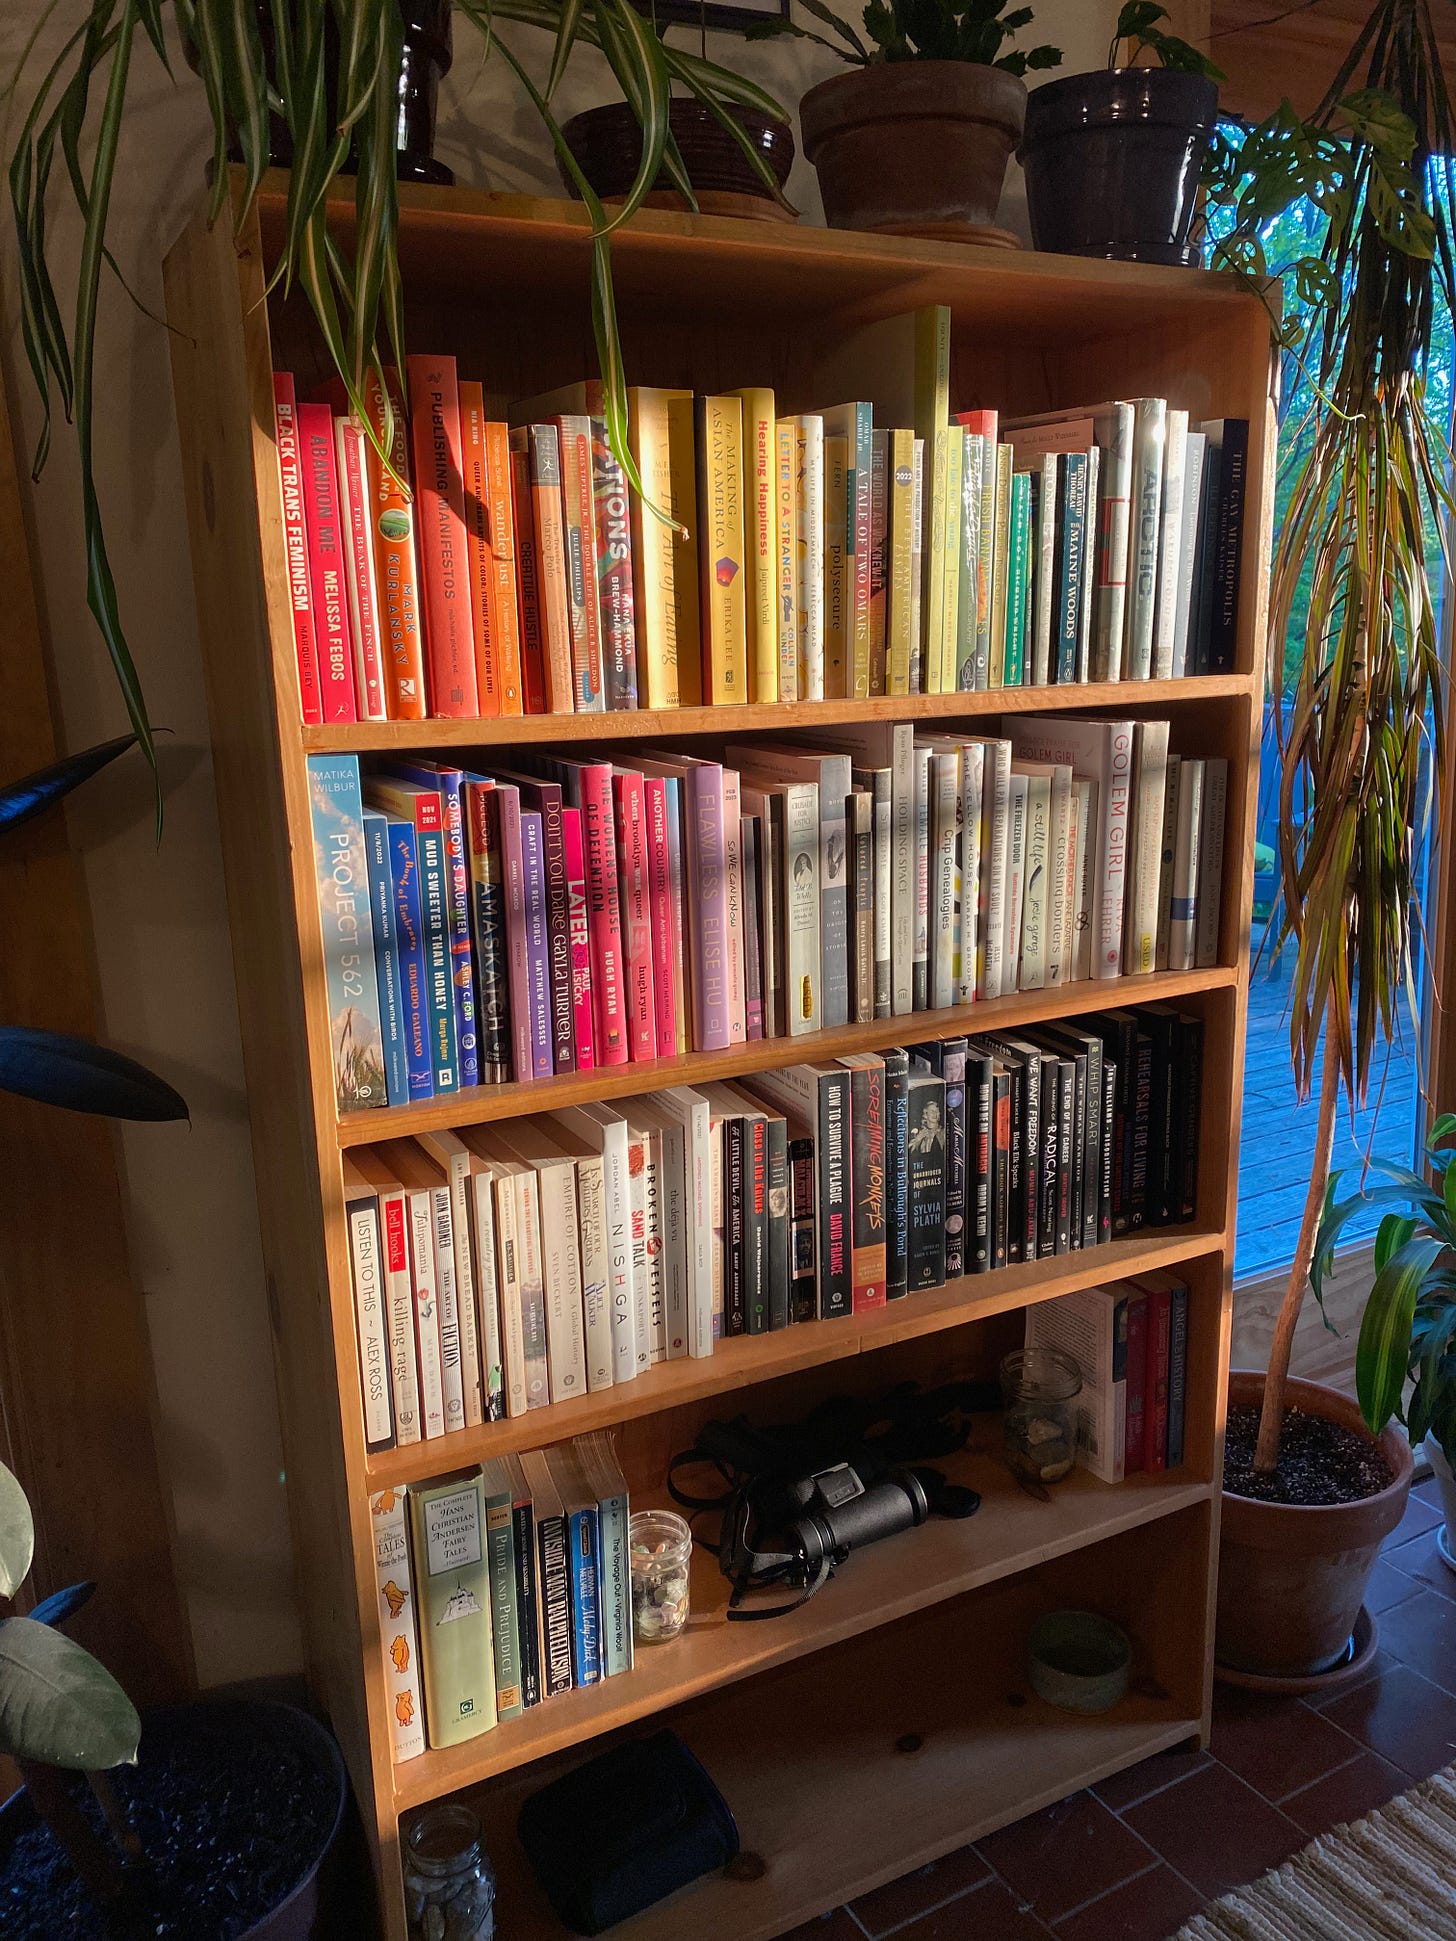 Deep golden evening light falls across a tall bookshelf arranged like a rainbow. Plants decorate the top of the shelf.